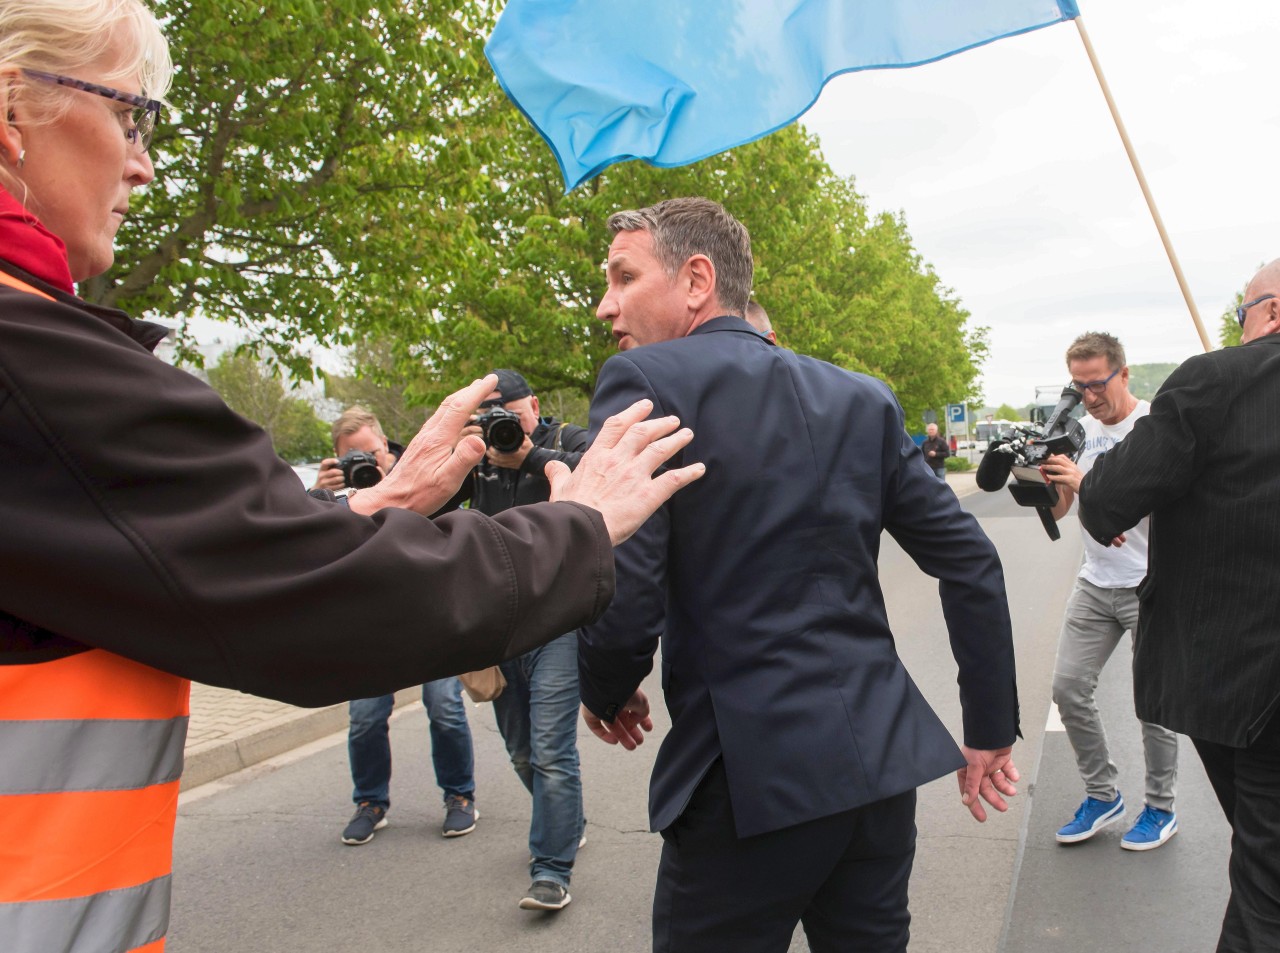 Thrüingens AfD-Landesvorsitzender Bernd, ääääh, Björn Höcke beim Versuch, zusammen mit Opelanern zu demonstrieren.